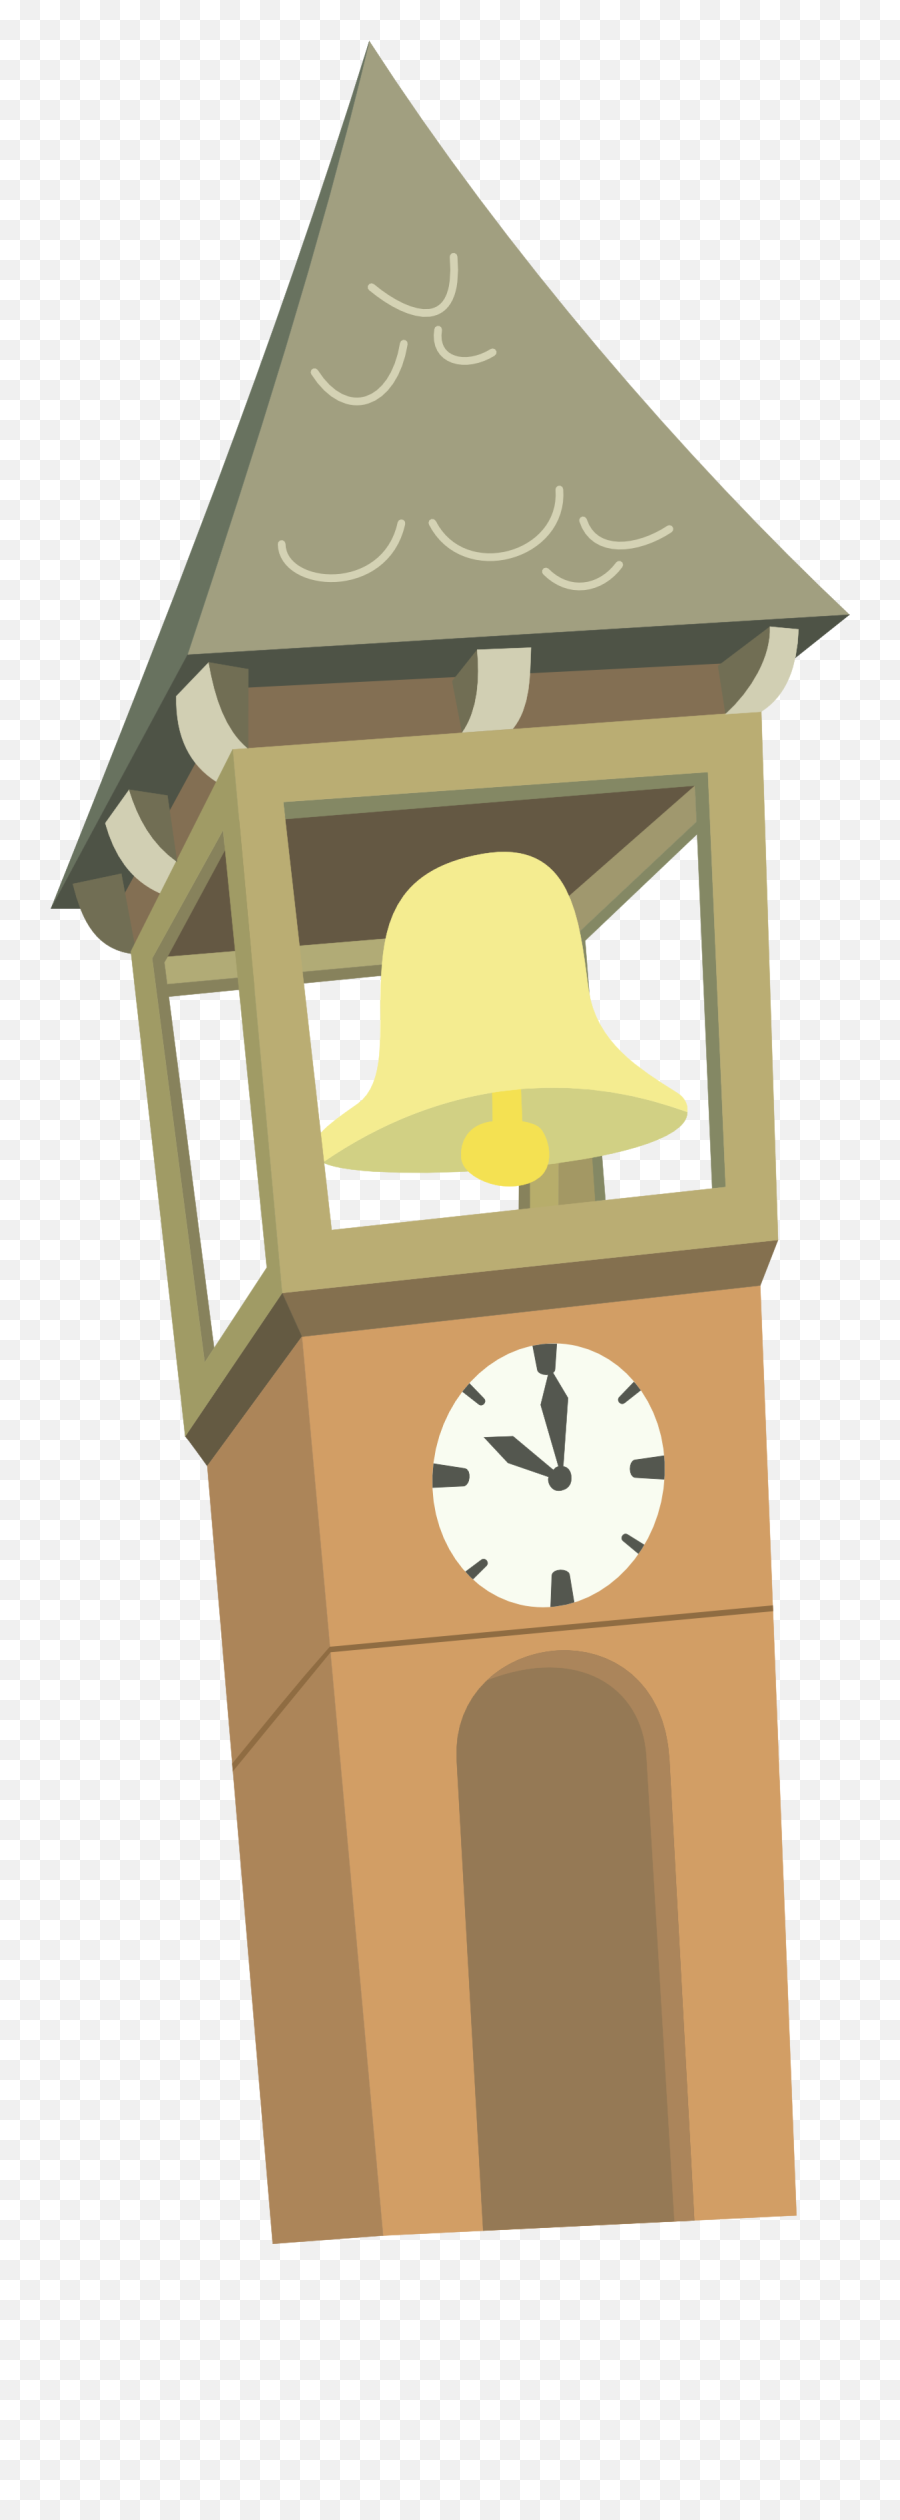 Download Images Of Big Ben Clock Cartoon Spacehero Emoji,Big Ben Png